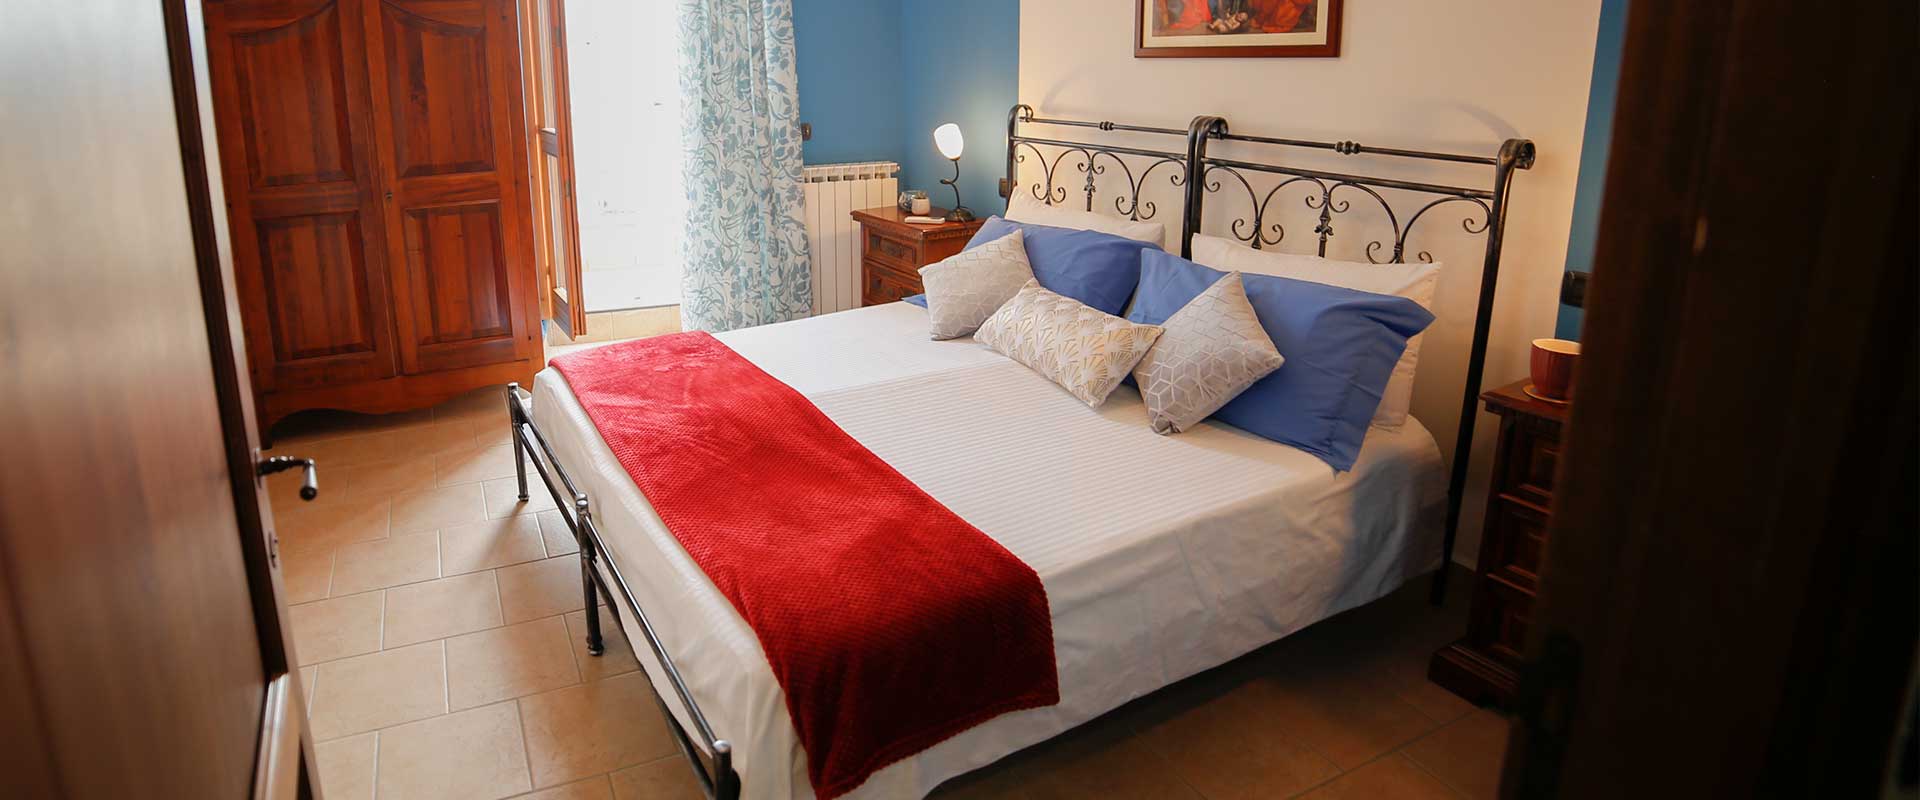 Tersicore è un accogliente appartamento per 4 persone con un piccolo balcone. Le Muse Appartamenti Bevagna centro storico, Umbria, Italia